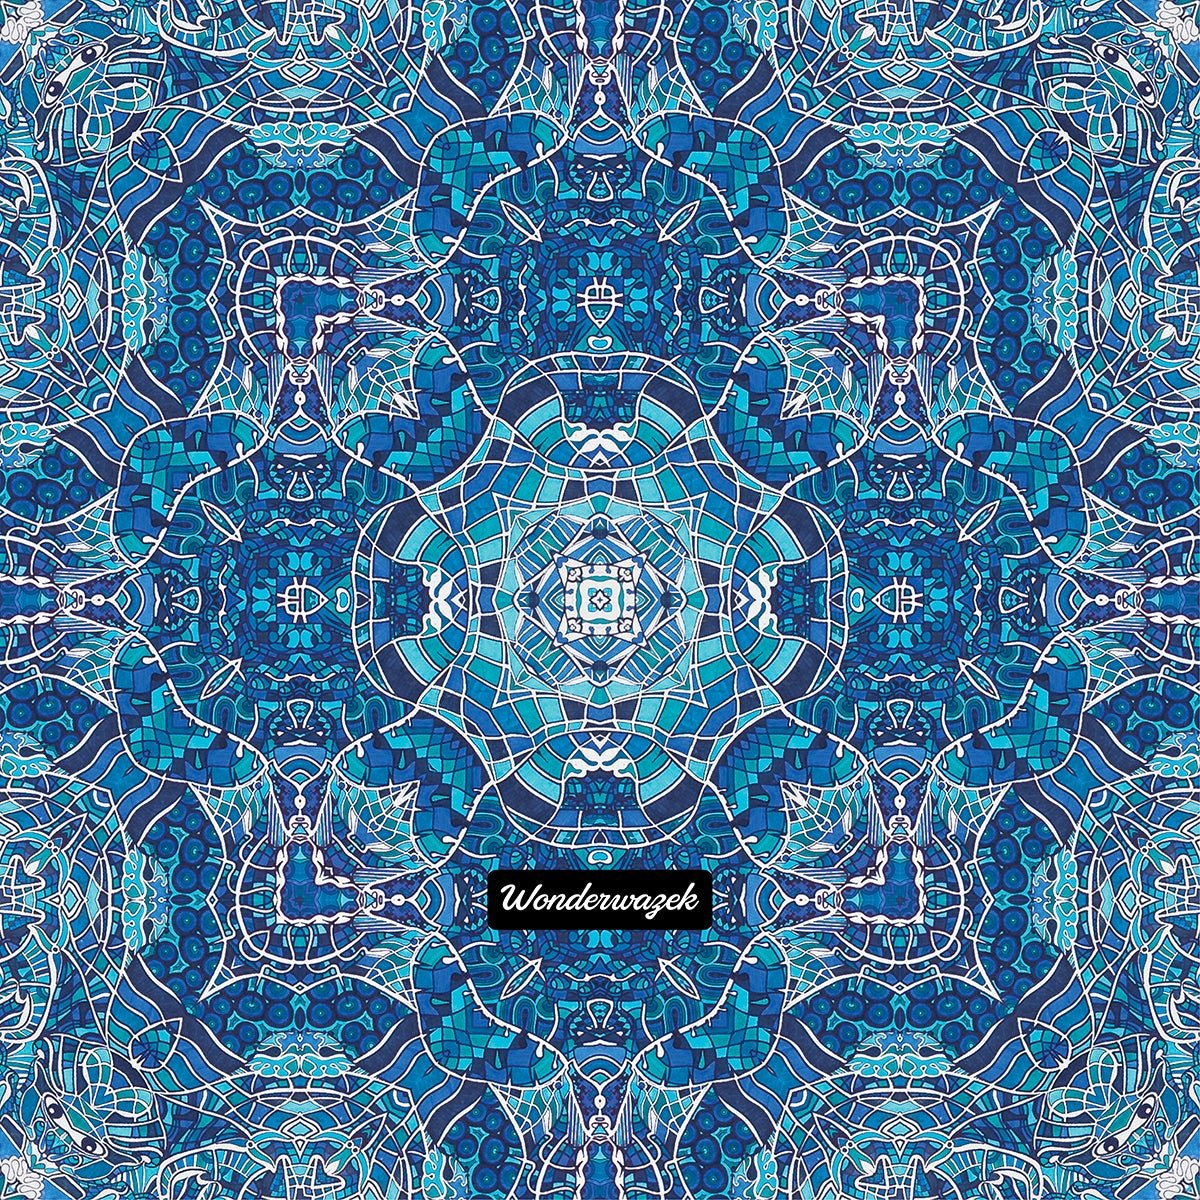 Einkaufstasche • Wassergeister – Kaleidoskop 1, blau, weiß - Wonderwazek